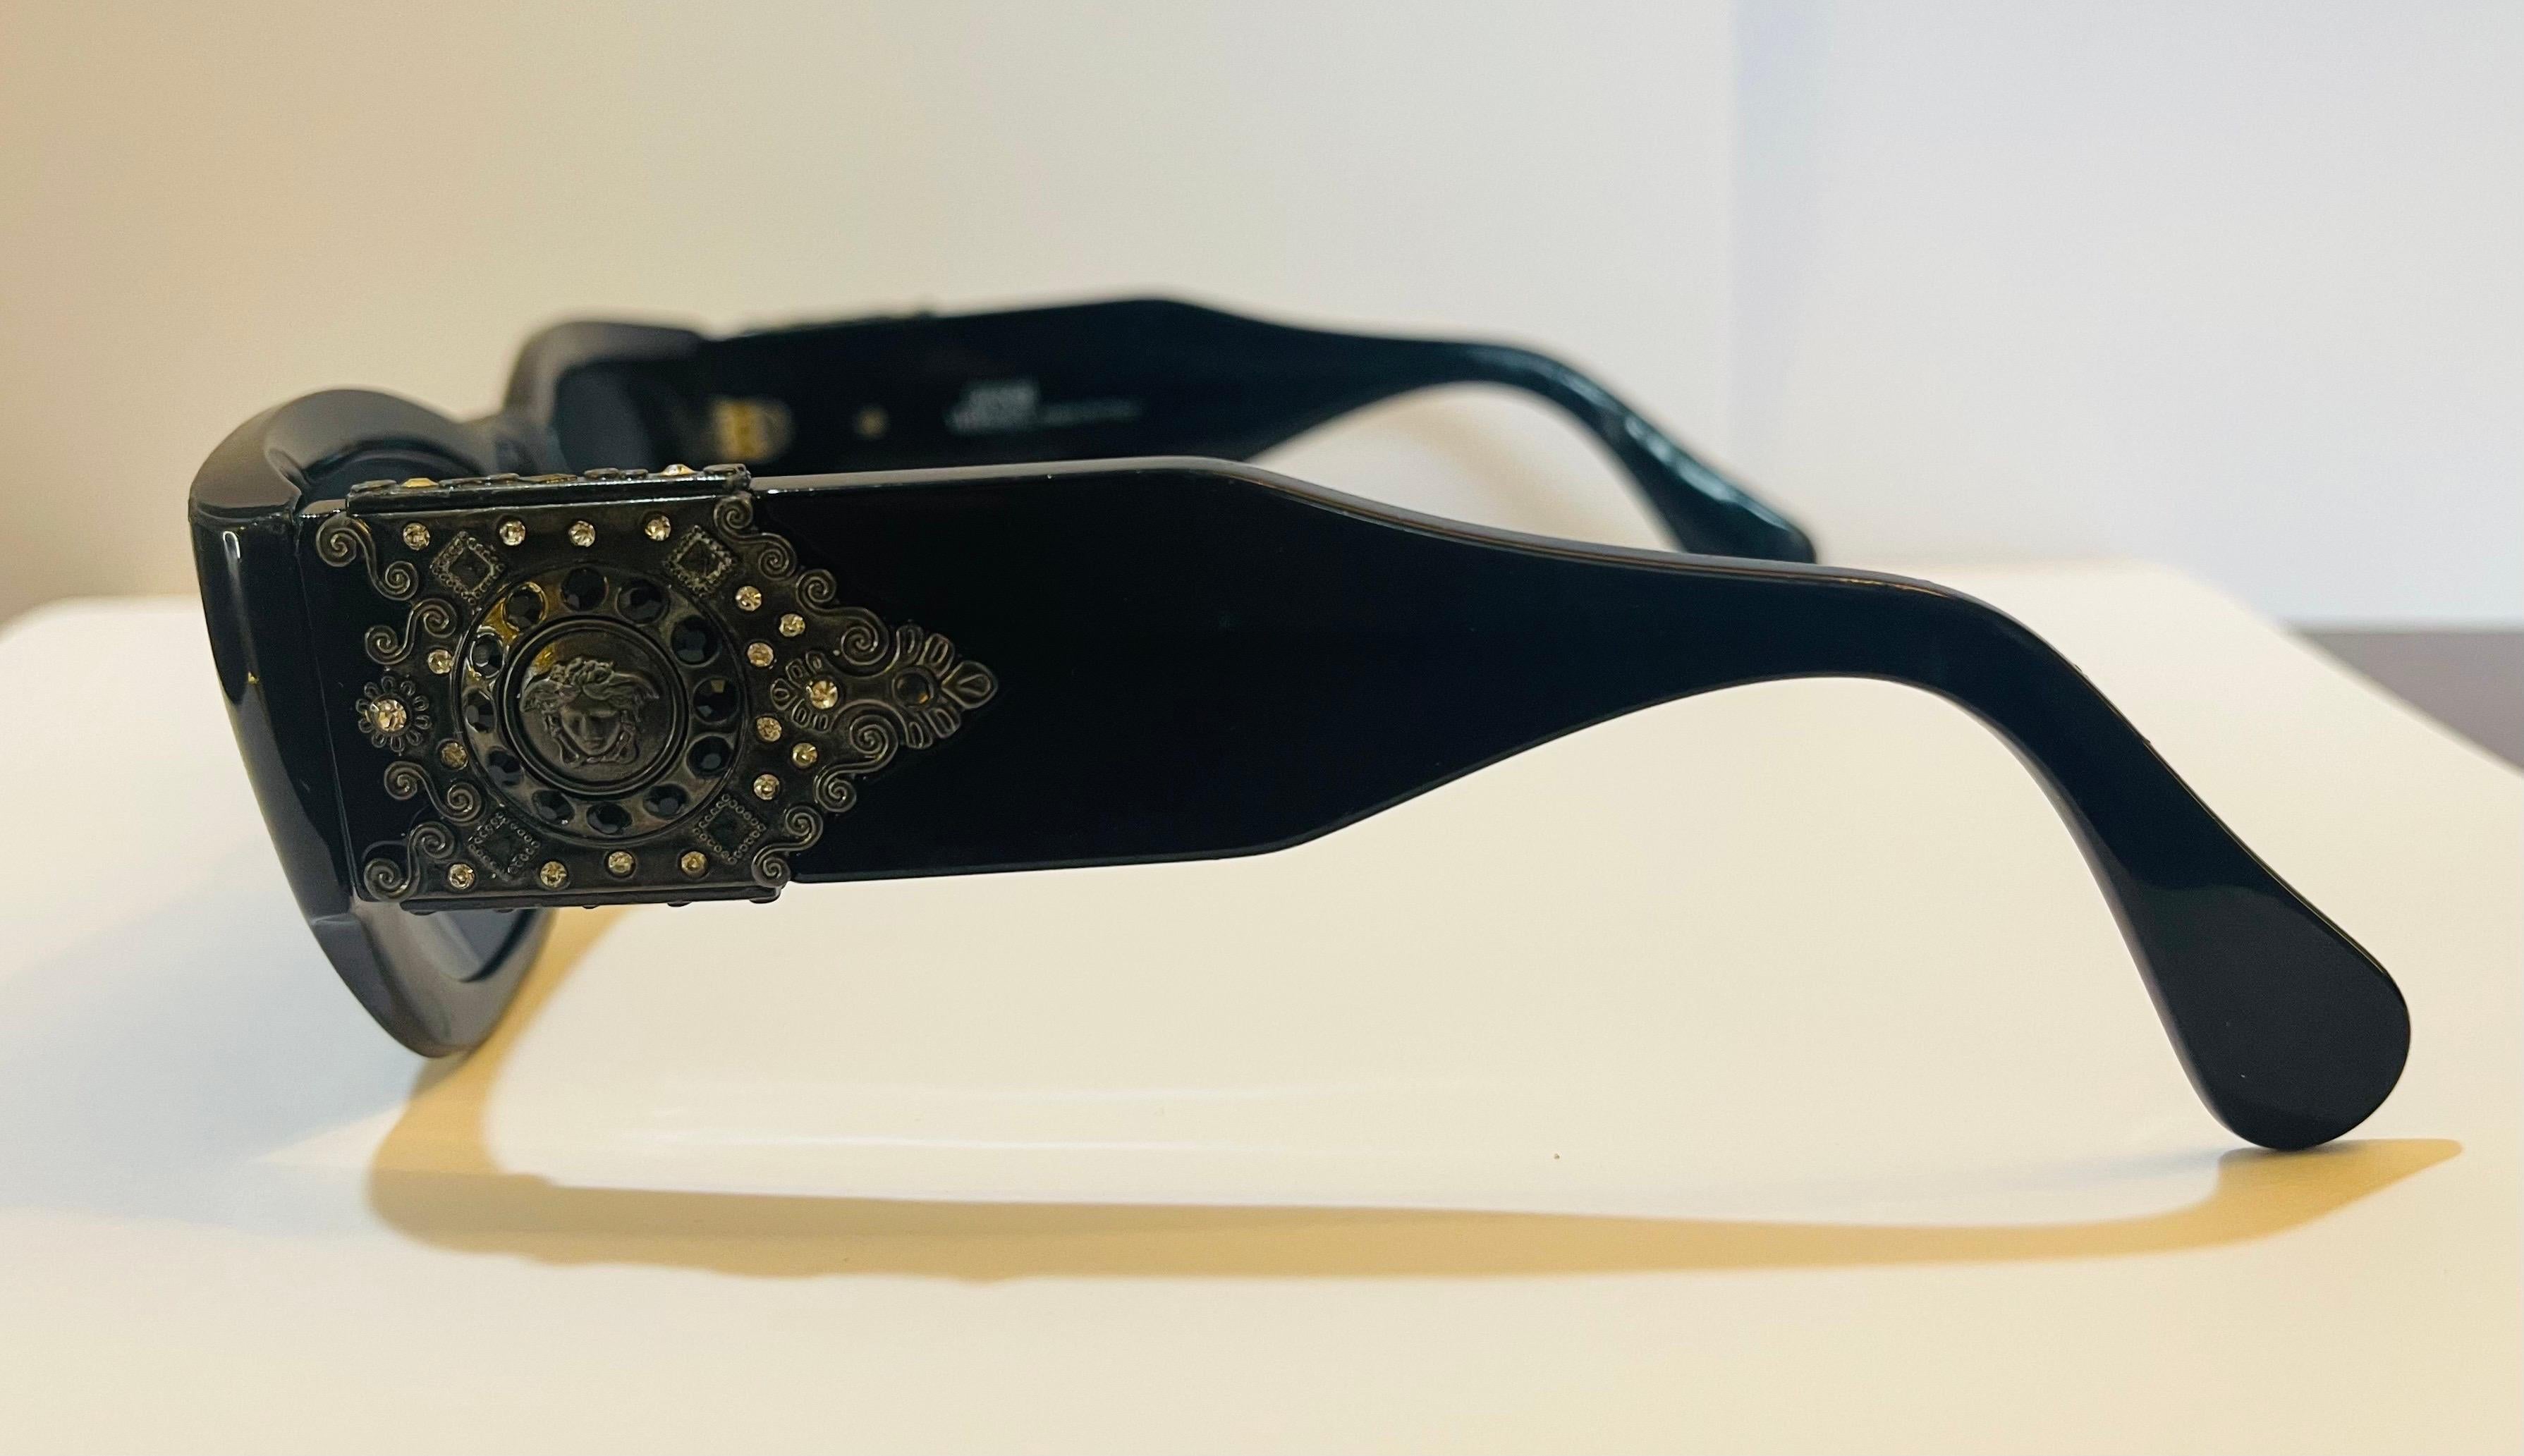 Äußerst seltene schwarze Sonnenbrille von Gianni Versace mit ikonischem Medusa-Motiv und Strasssteinen.